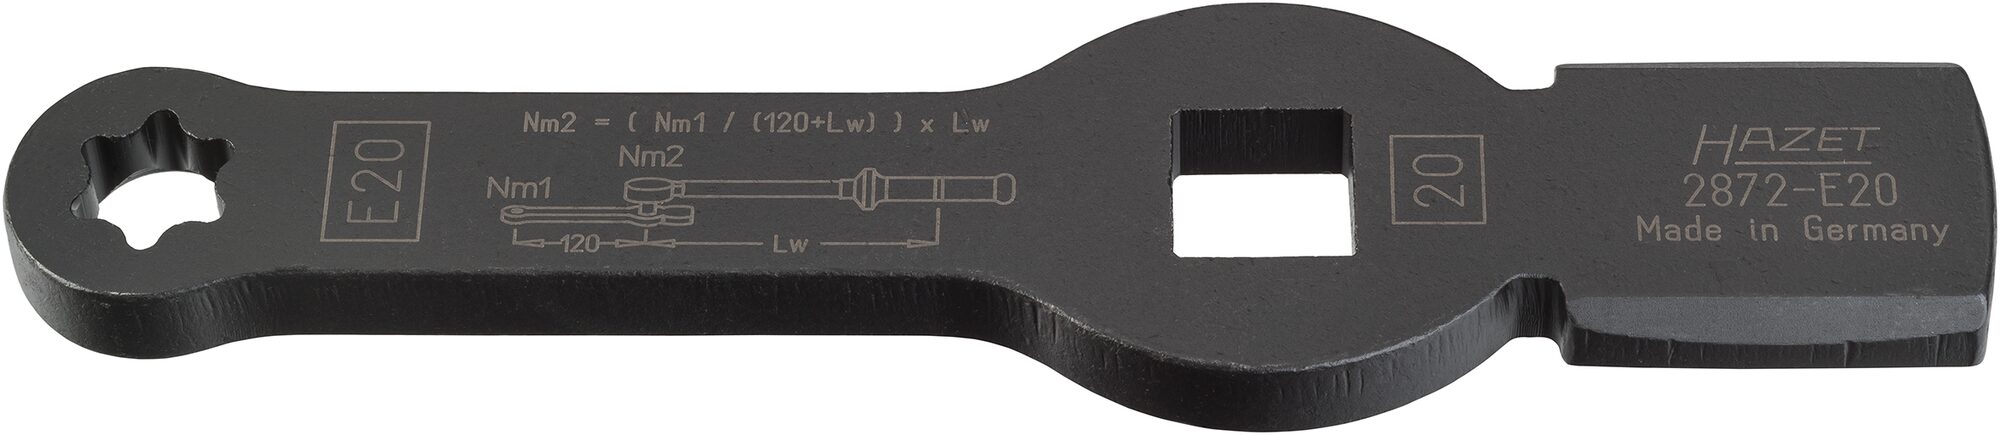 HAZET TORX® Schlag-Schlüssel · mit 2 Schlagflächen 2872-E20 · Vierkant hohl 20 mm (3/4 Zoll) · Außen TORX® Profil · E20